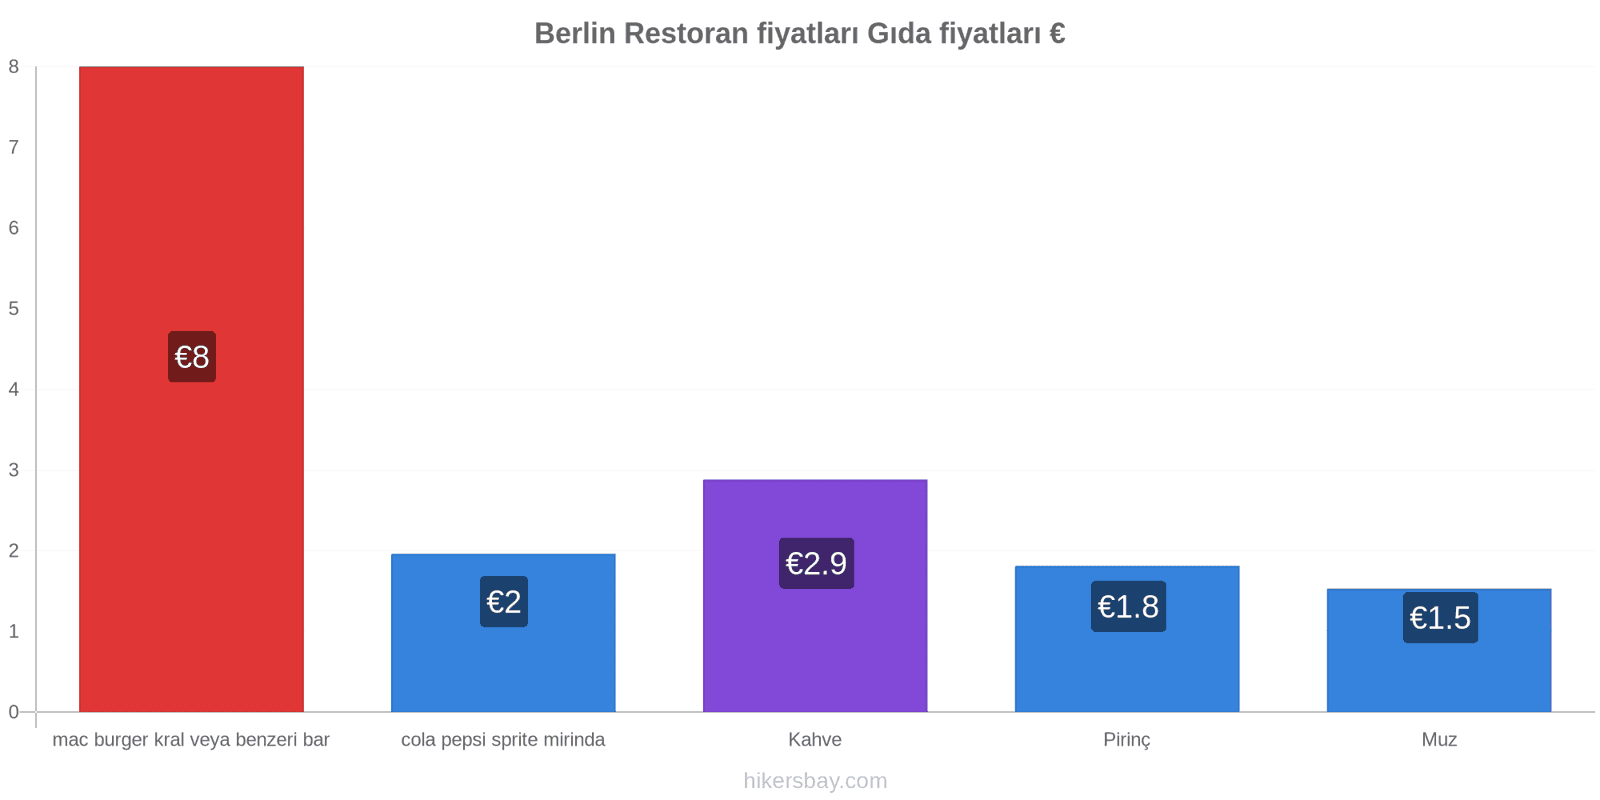 Berlin fiyat değişiklikleri hikersbay.com